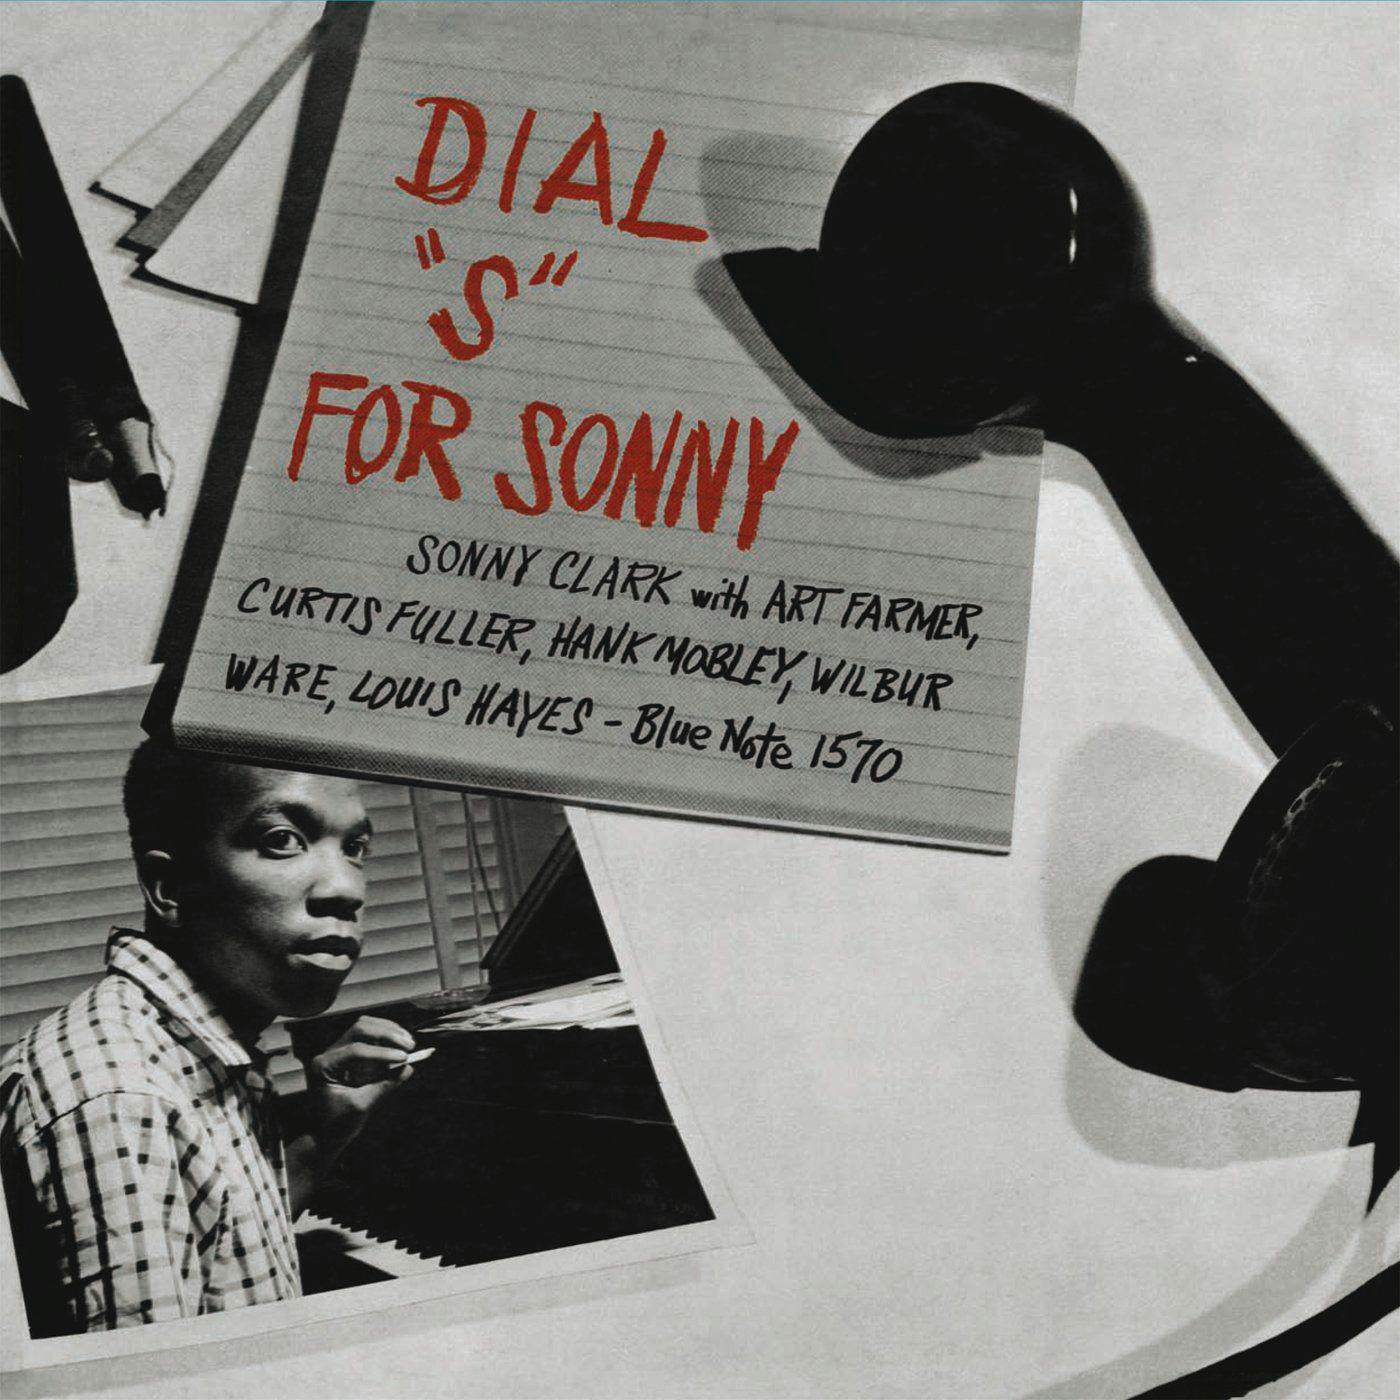 Sonny Clark Dial 's' For Sonny (Blue Note Classic Vinyl Series) Vinyl Record